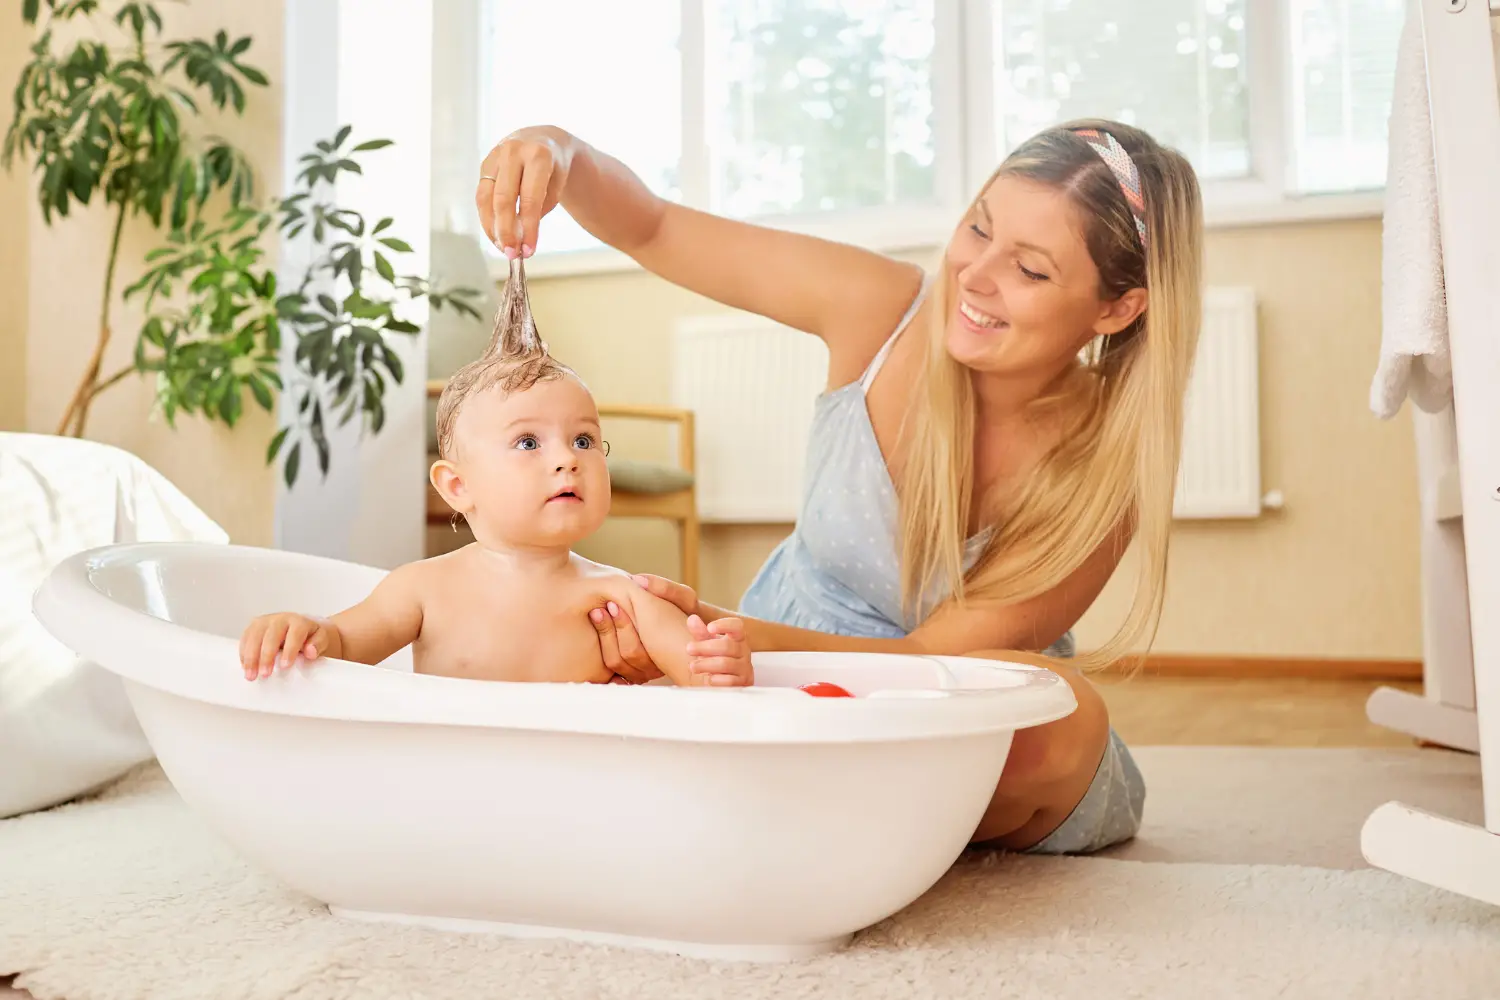 Baby Bath Bathtub Thermometer For Infant - Safety Bath Tub Water